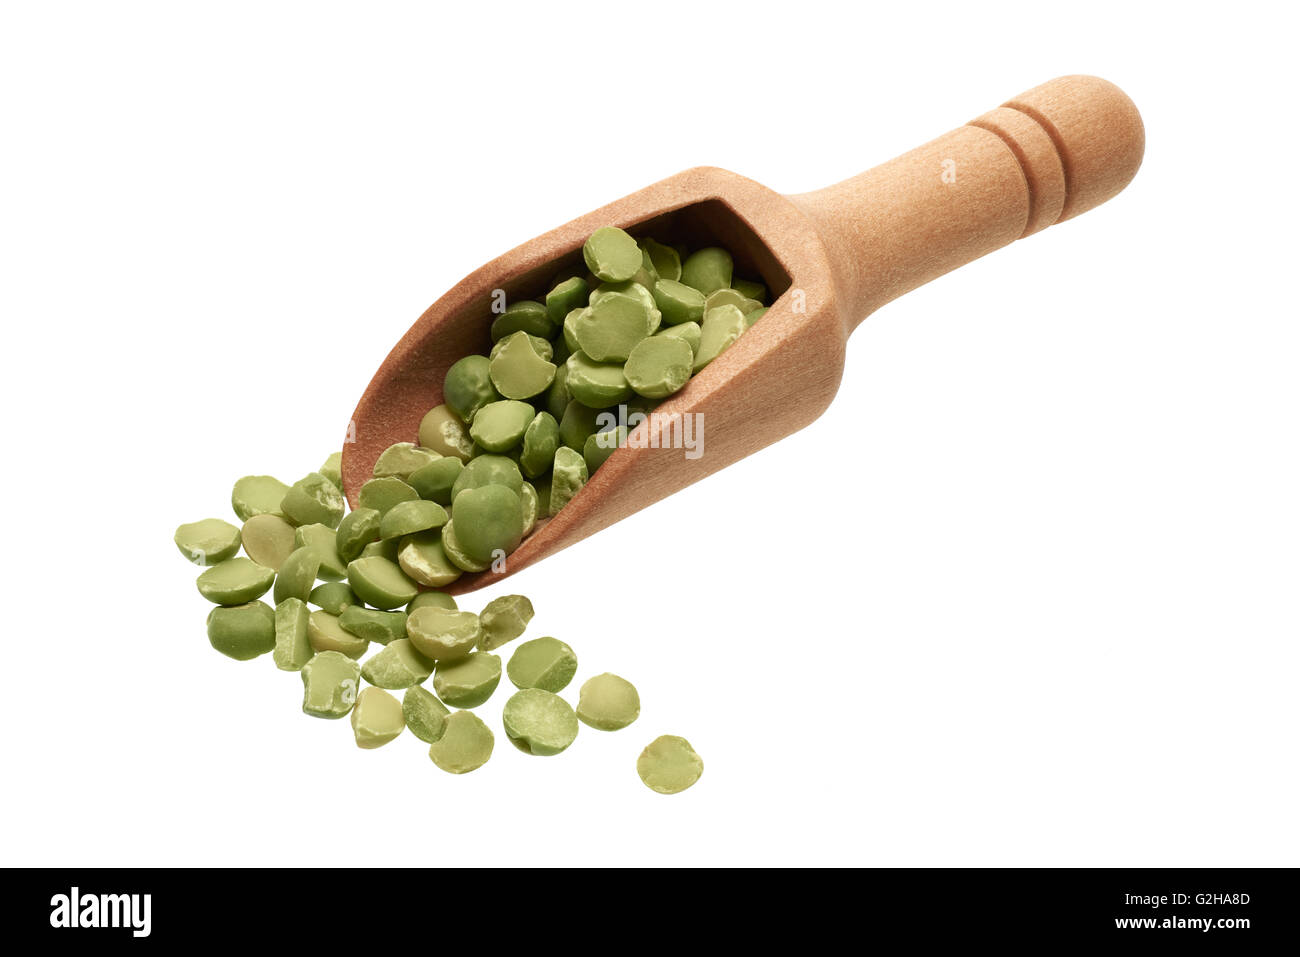 Ingredienti alimentari: heap di secche piselli verdi in un cucchiaio di legno, su sfondo bianco Foto Stock